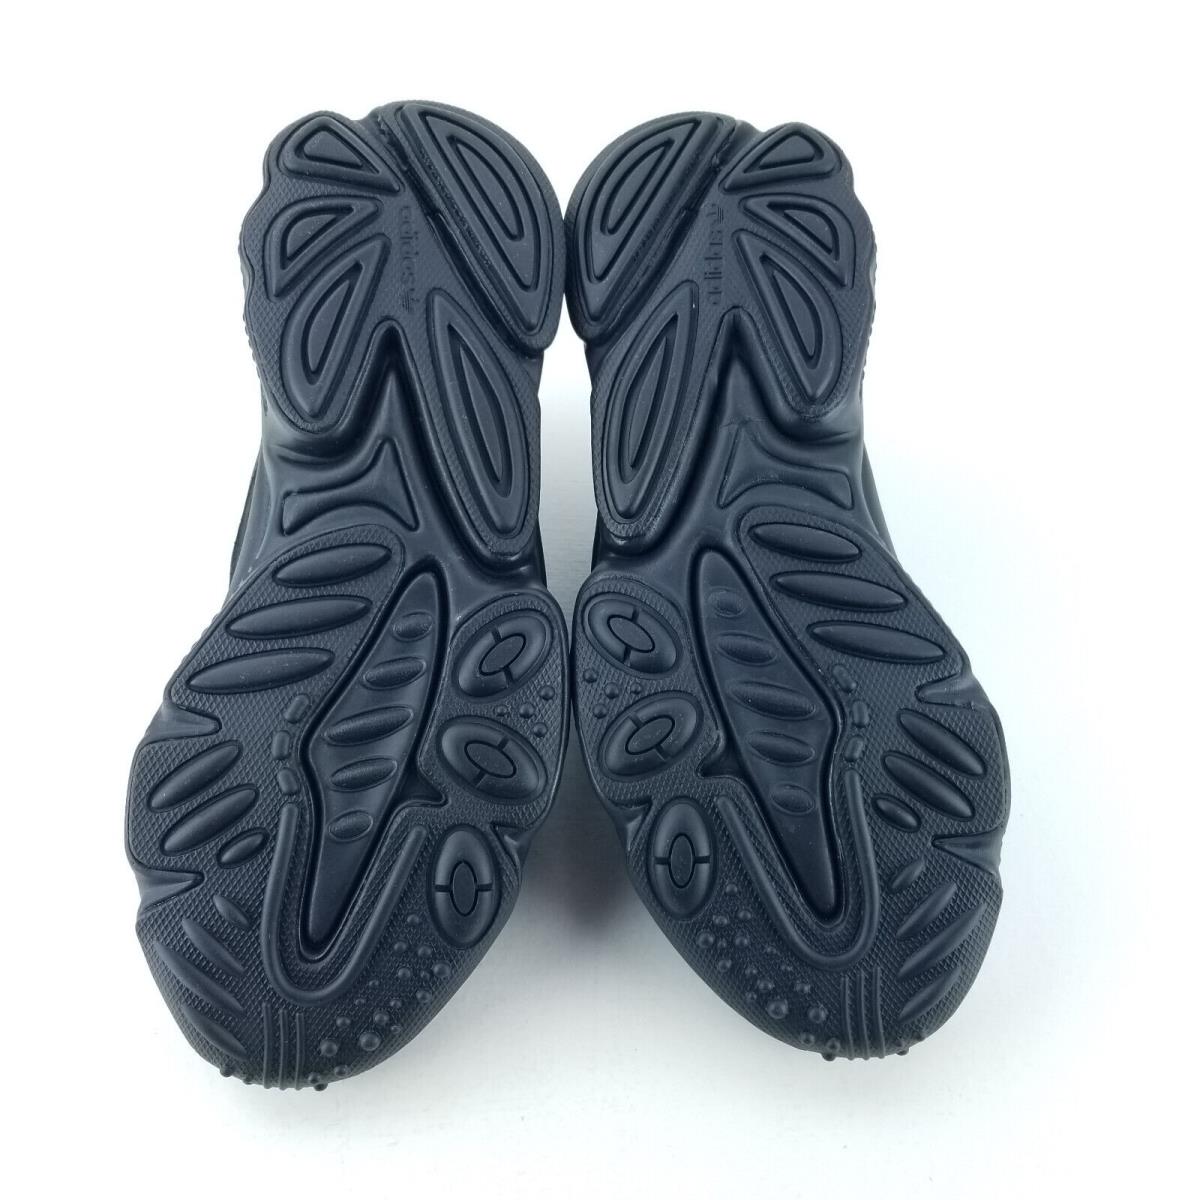 Adidas shoes Originals Ozweego - Black 4